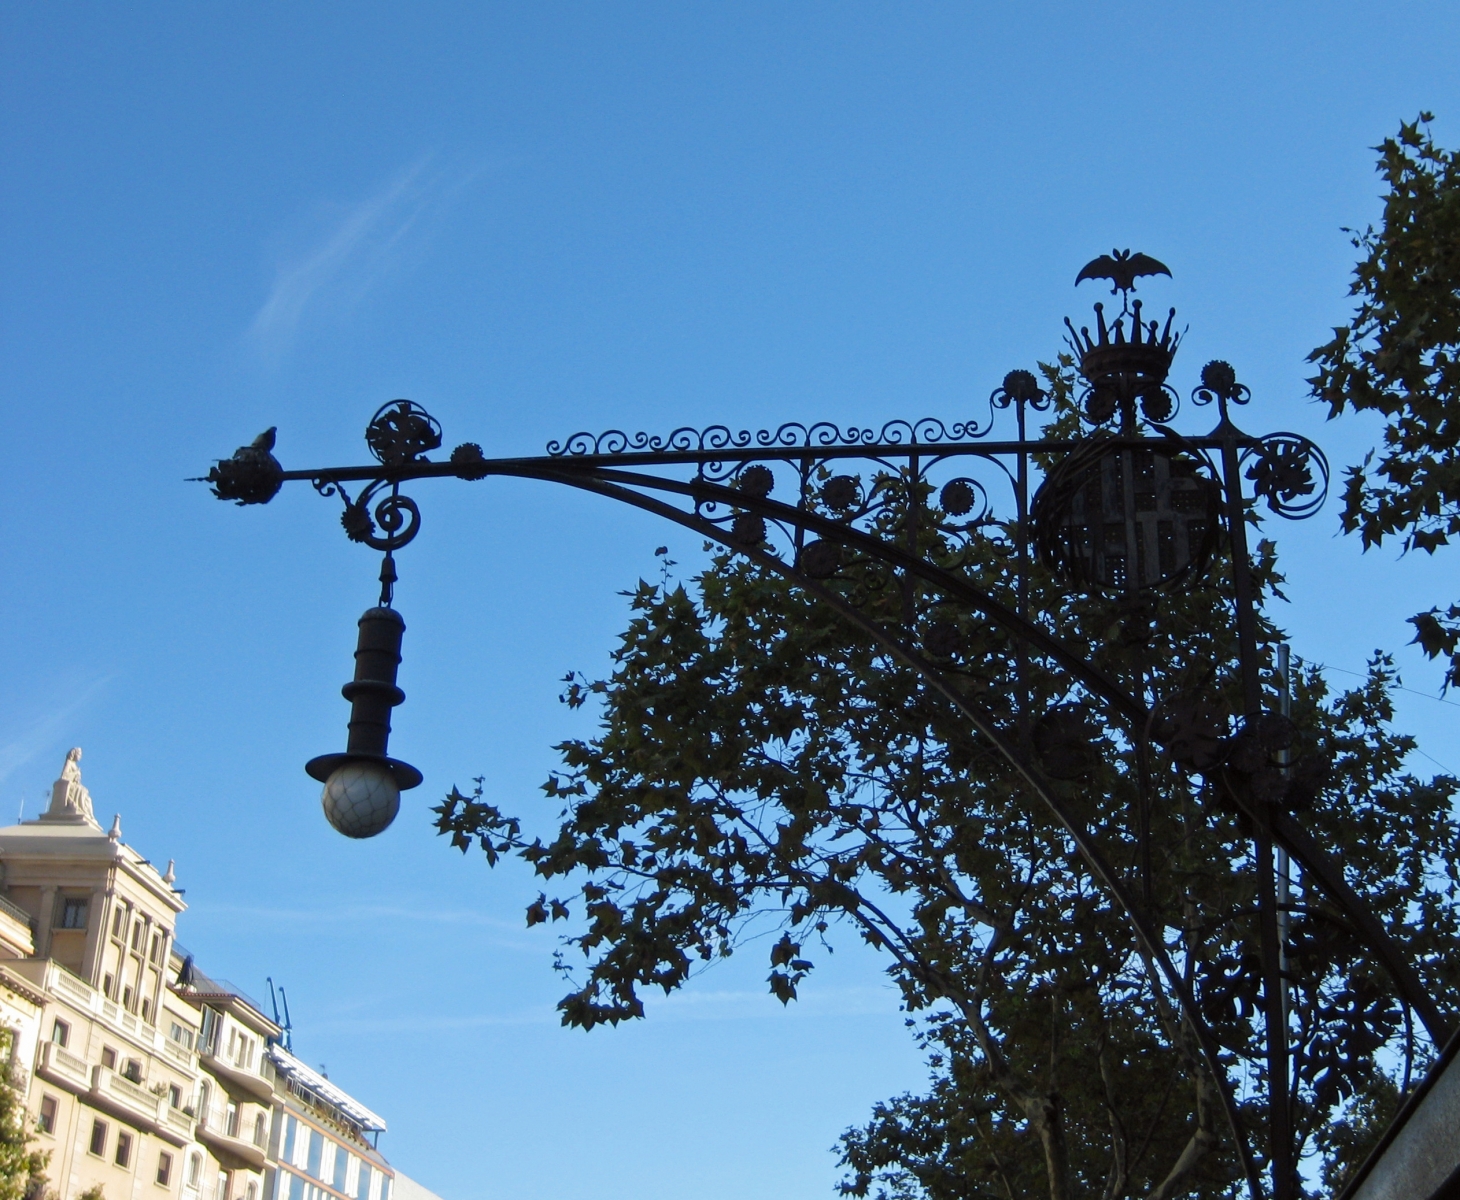 Ornate ironwork light post in Barcelona